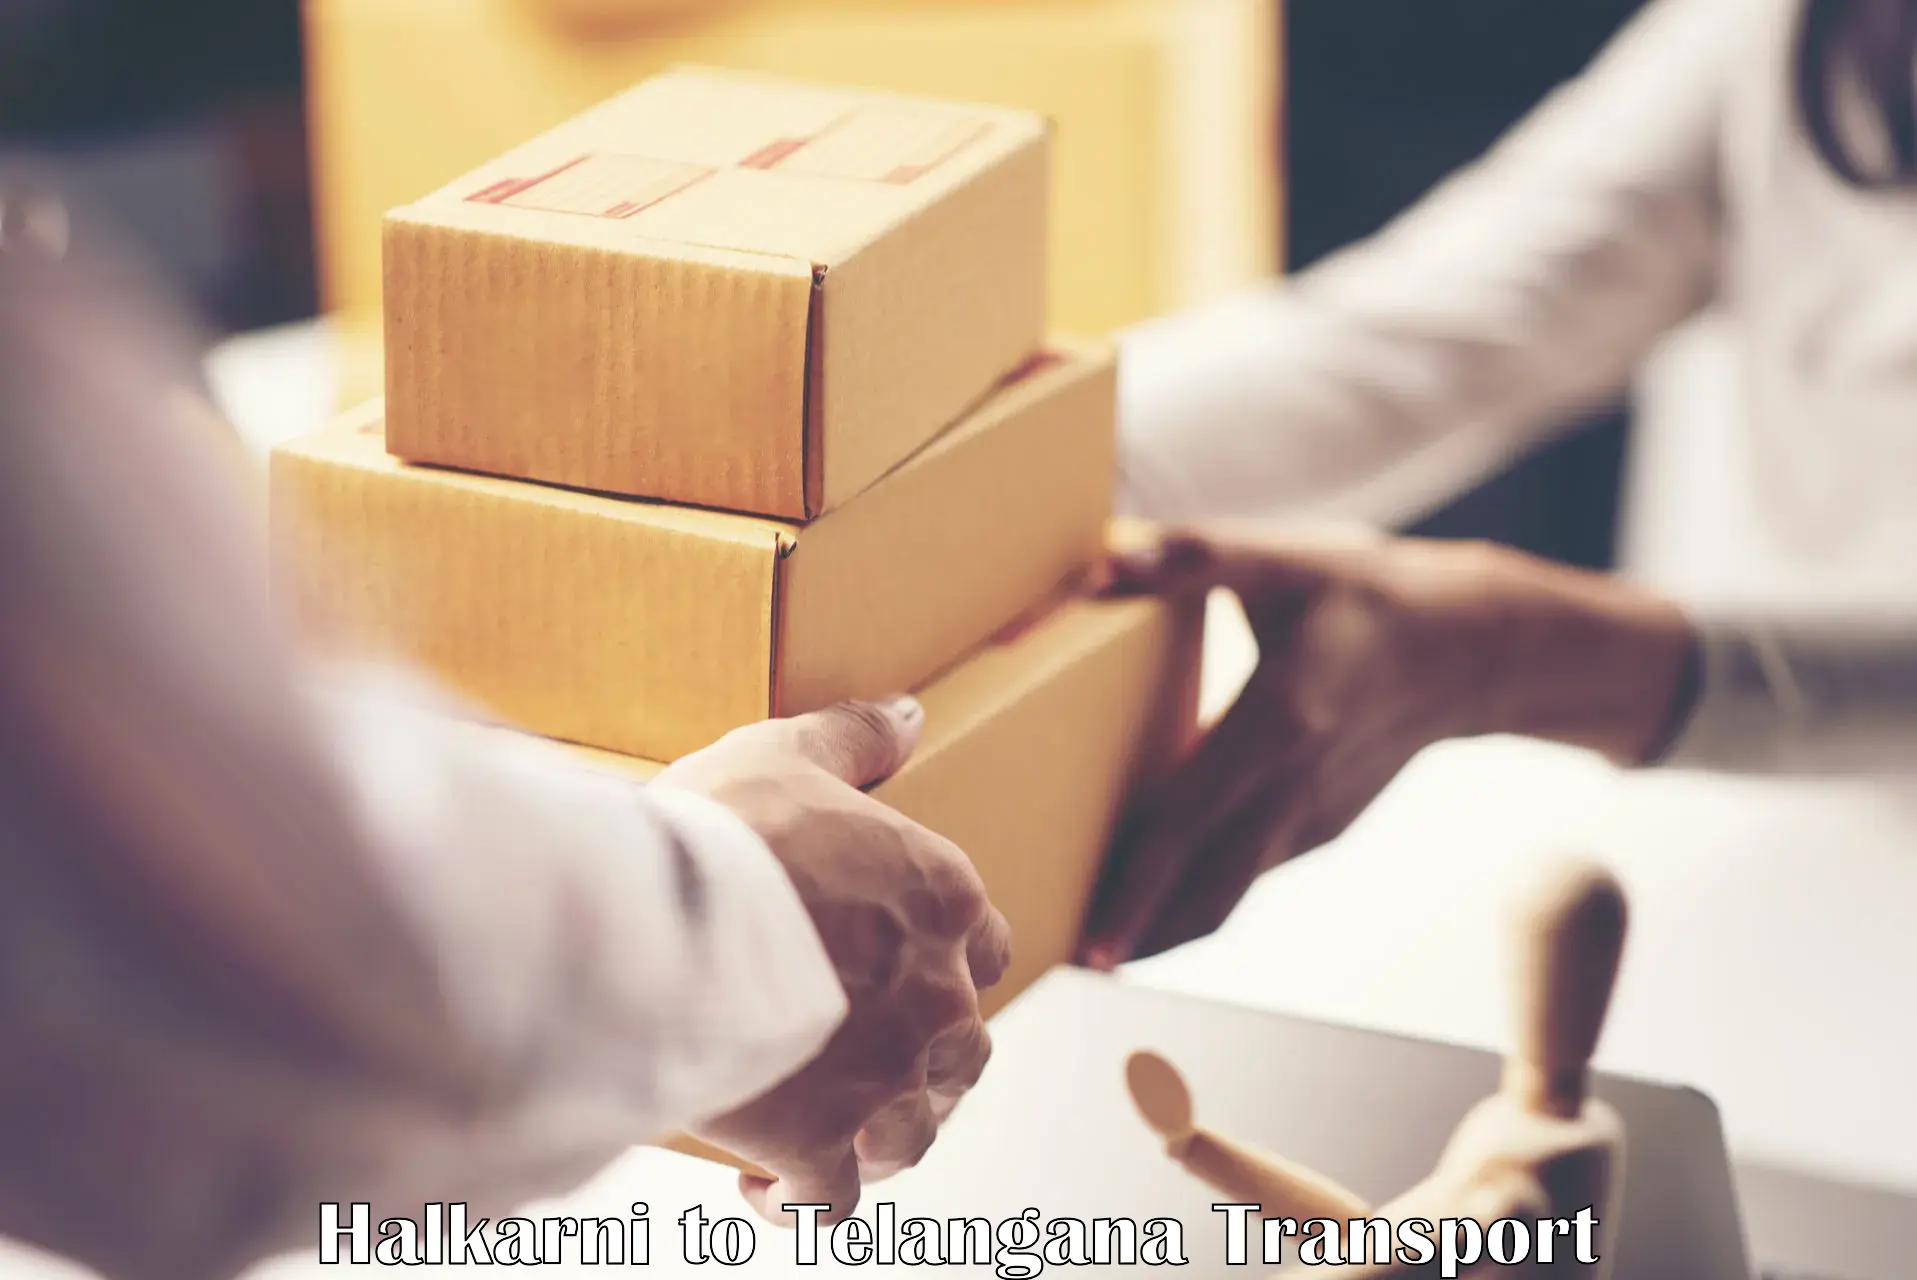 Shipping partner Halkarni to Kallur